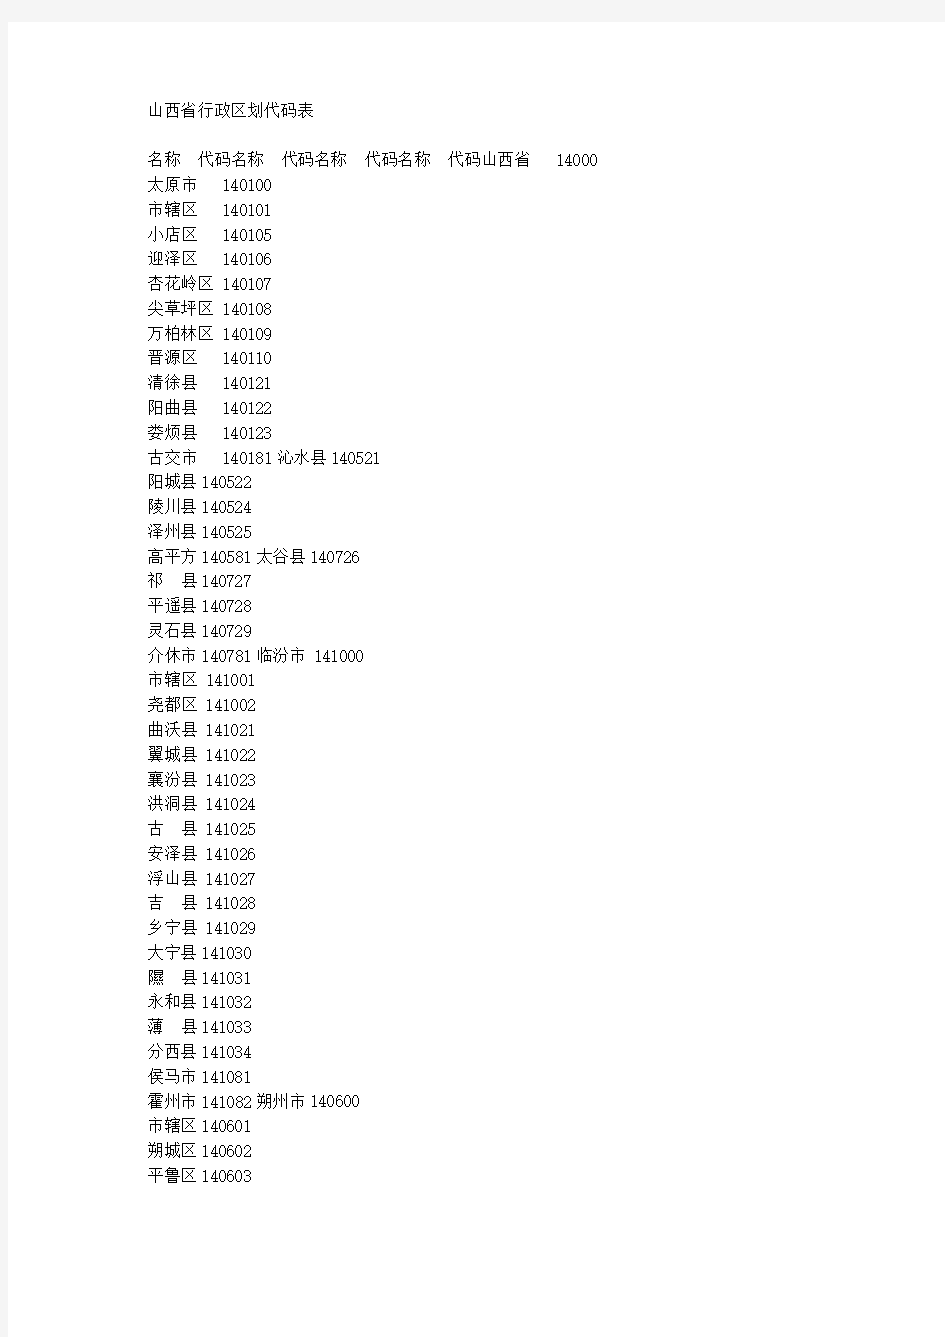 山西省行政区划代码表